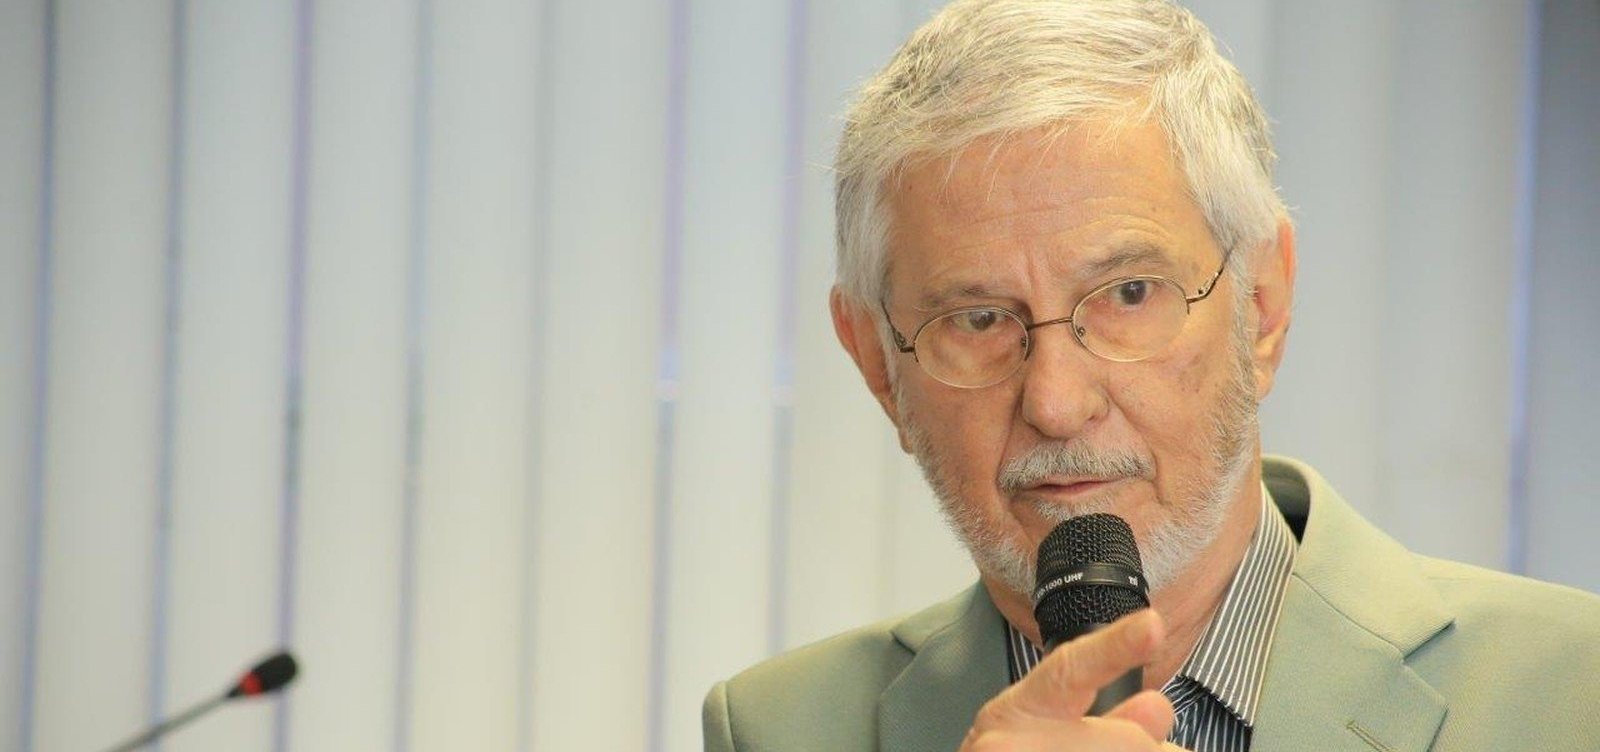 Morre, aos 84 anos, ex-presidente da Câmara dos Deputados Ibsen Pinheiro